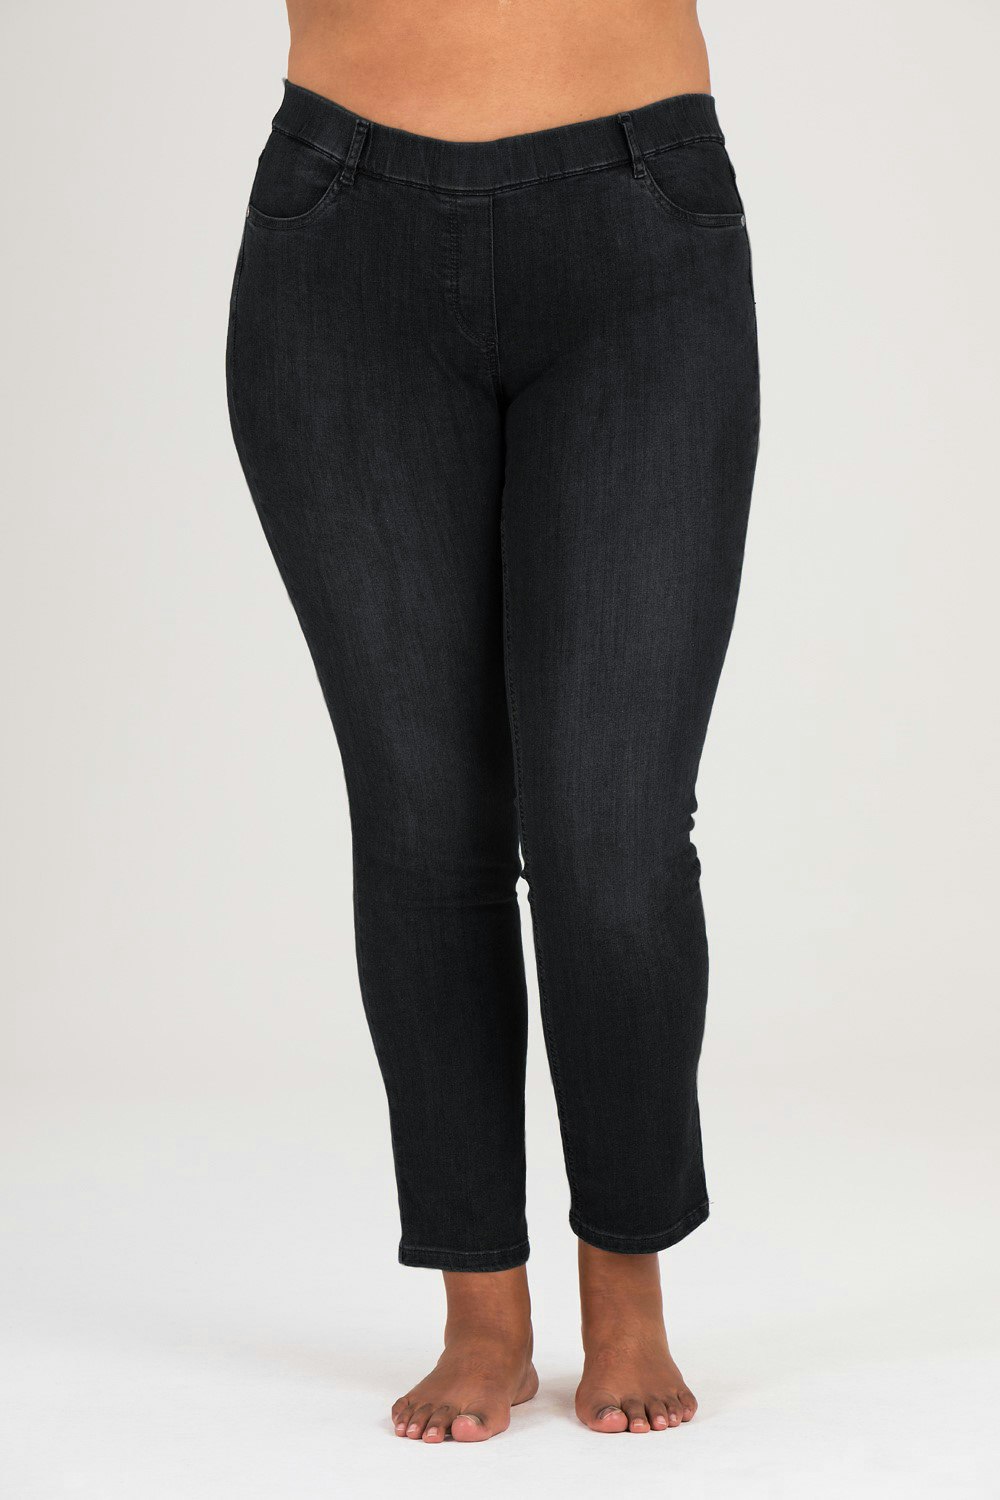 Pamela jeans 4945 black